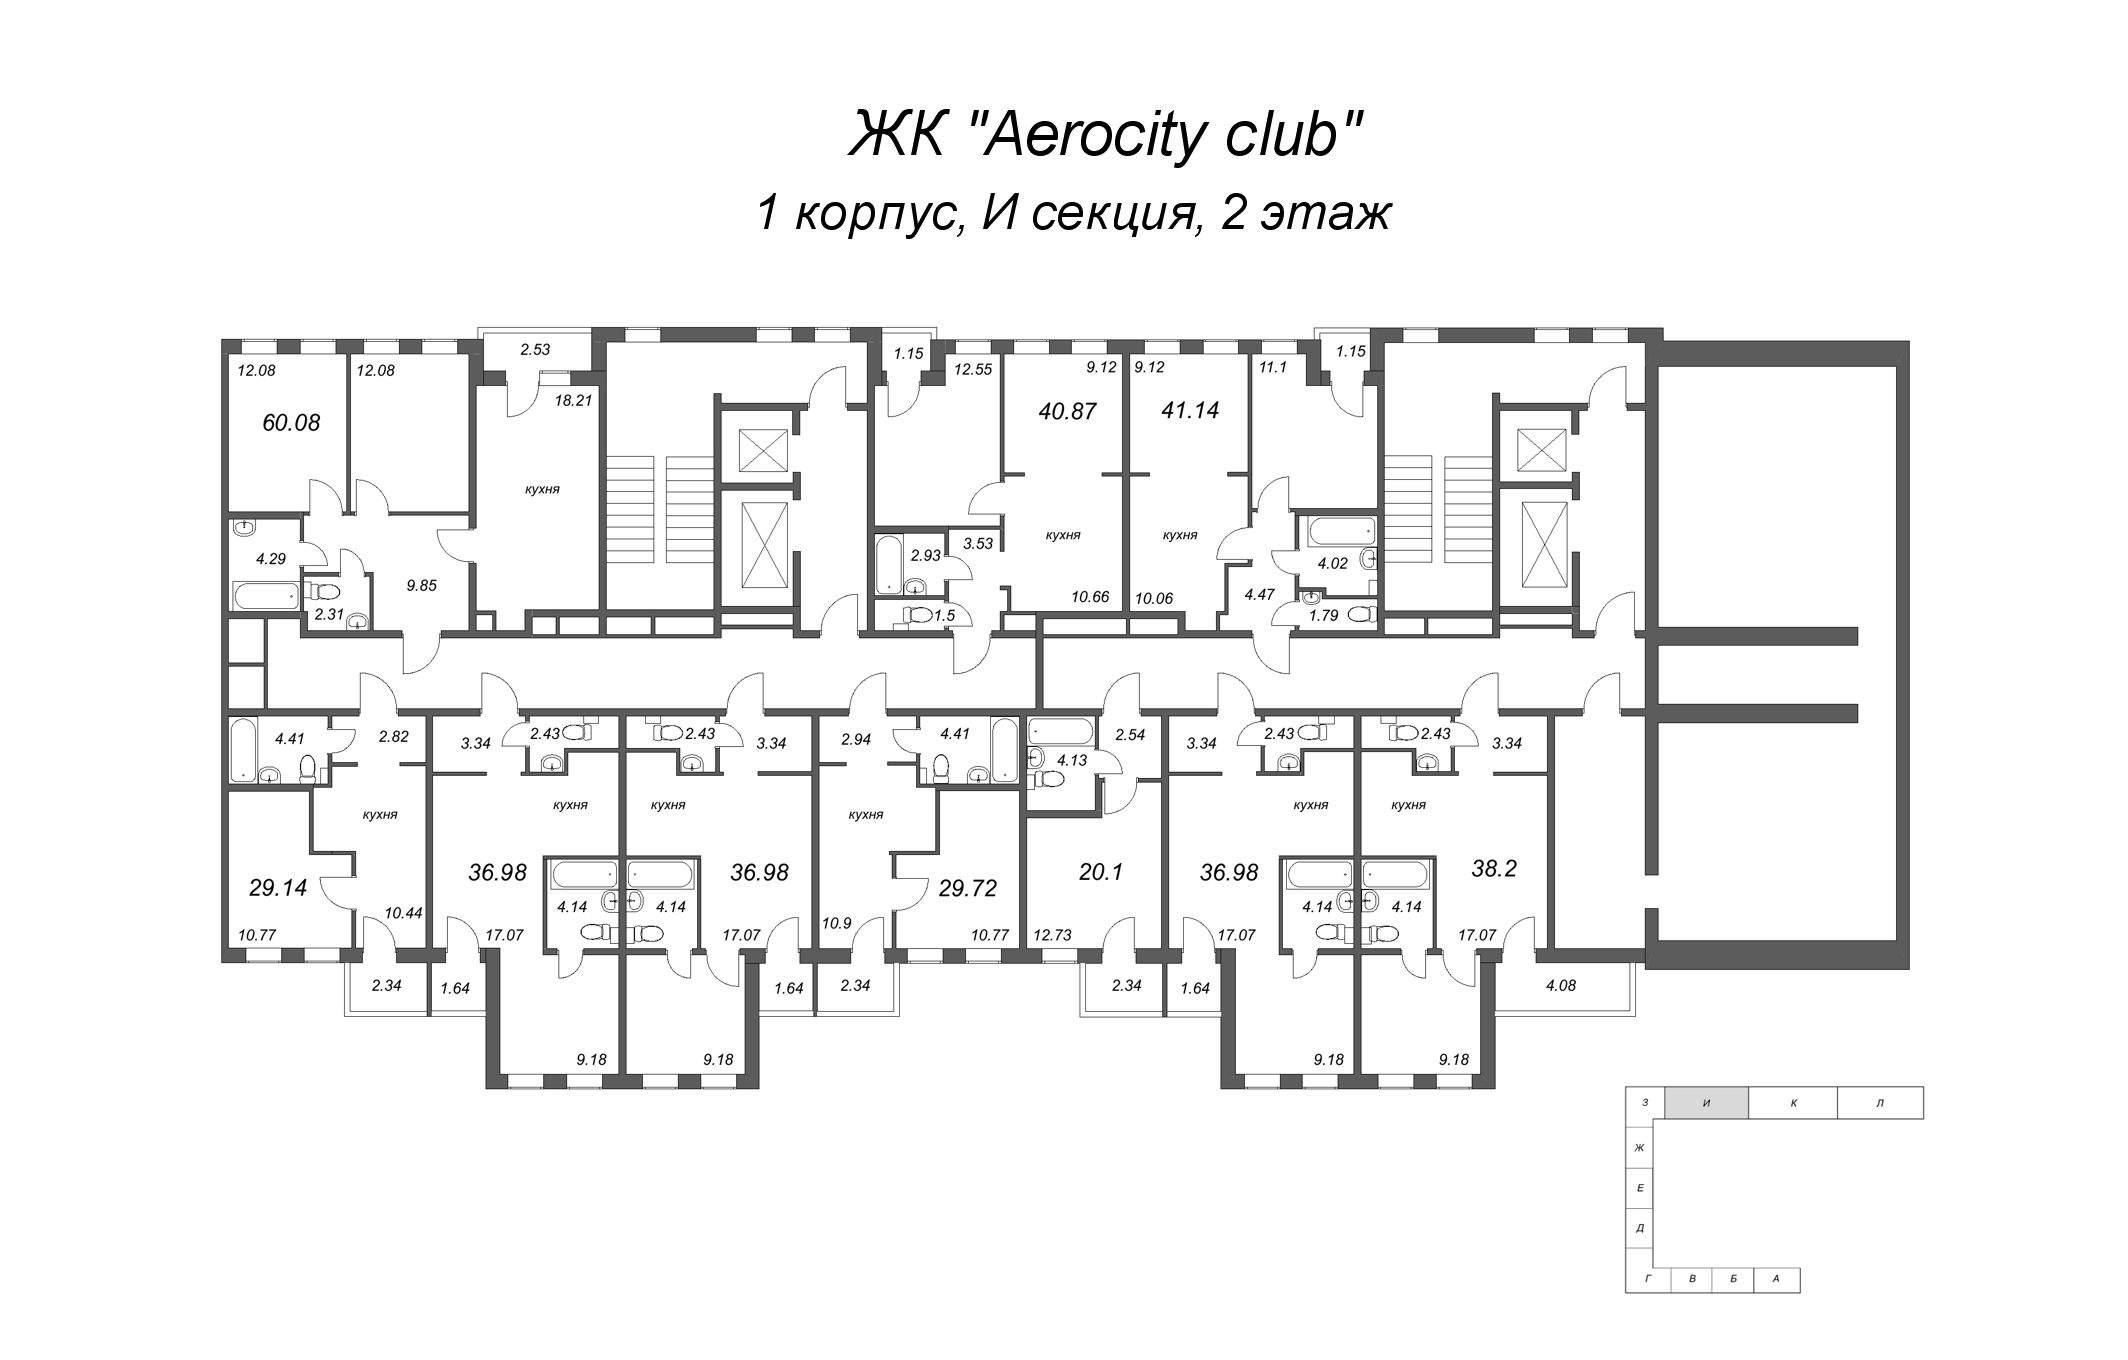 2-комнатная (Евро) квартира, 36.98 м² в ЖК "AEROCITY Club" - планировка этажа